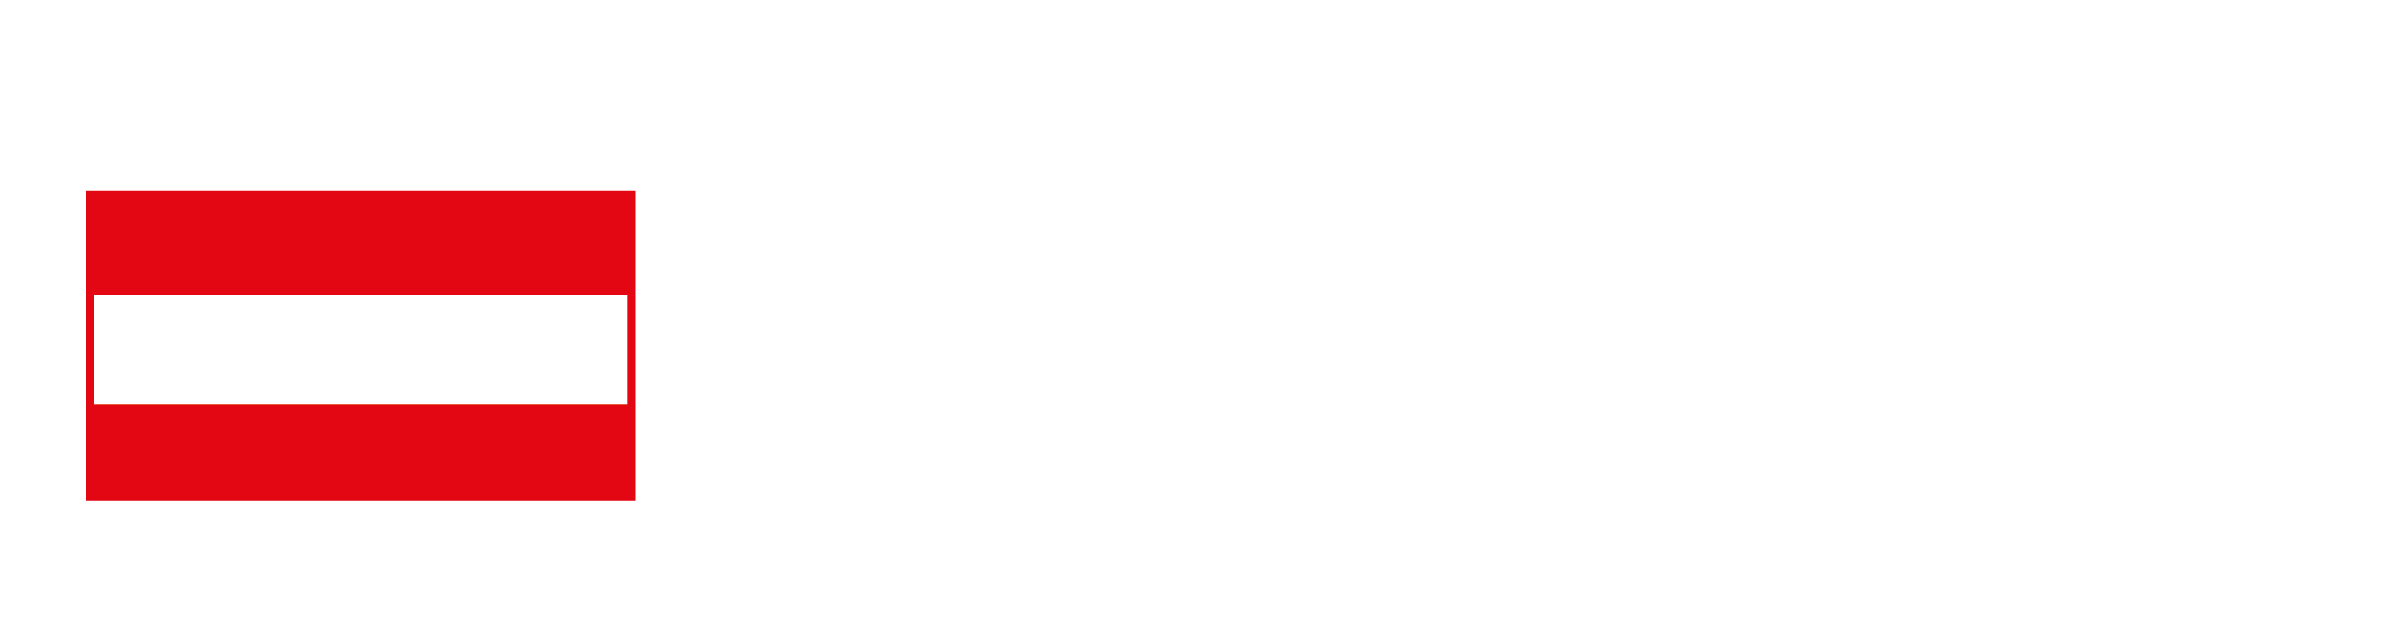 Autria wines logo transparant--wit